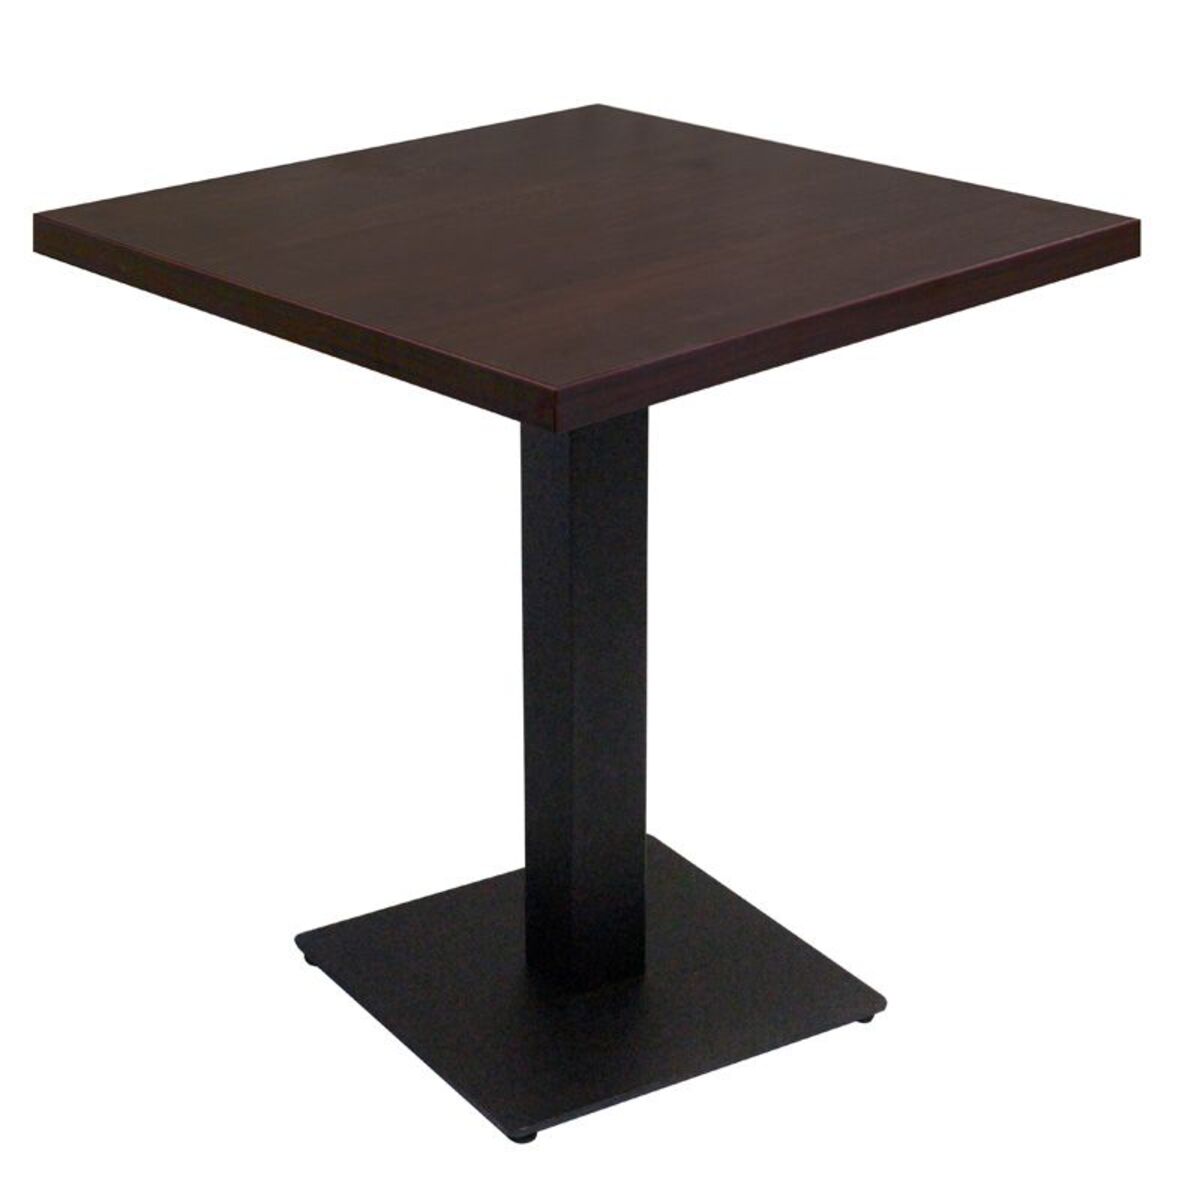 Table intérieure pied noir base carrée & plateau tavola wengé 60x60 cm